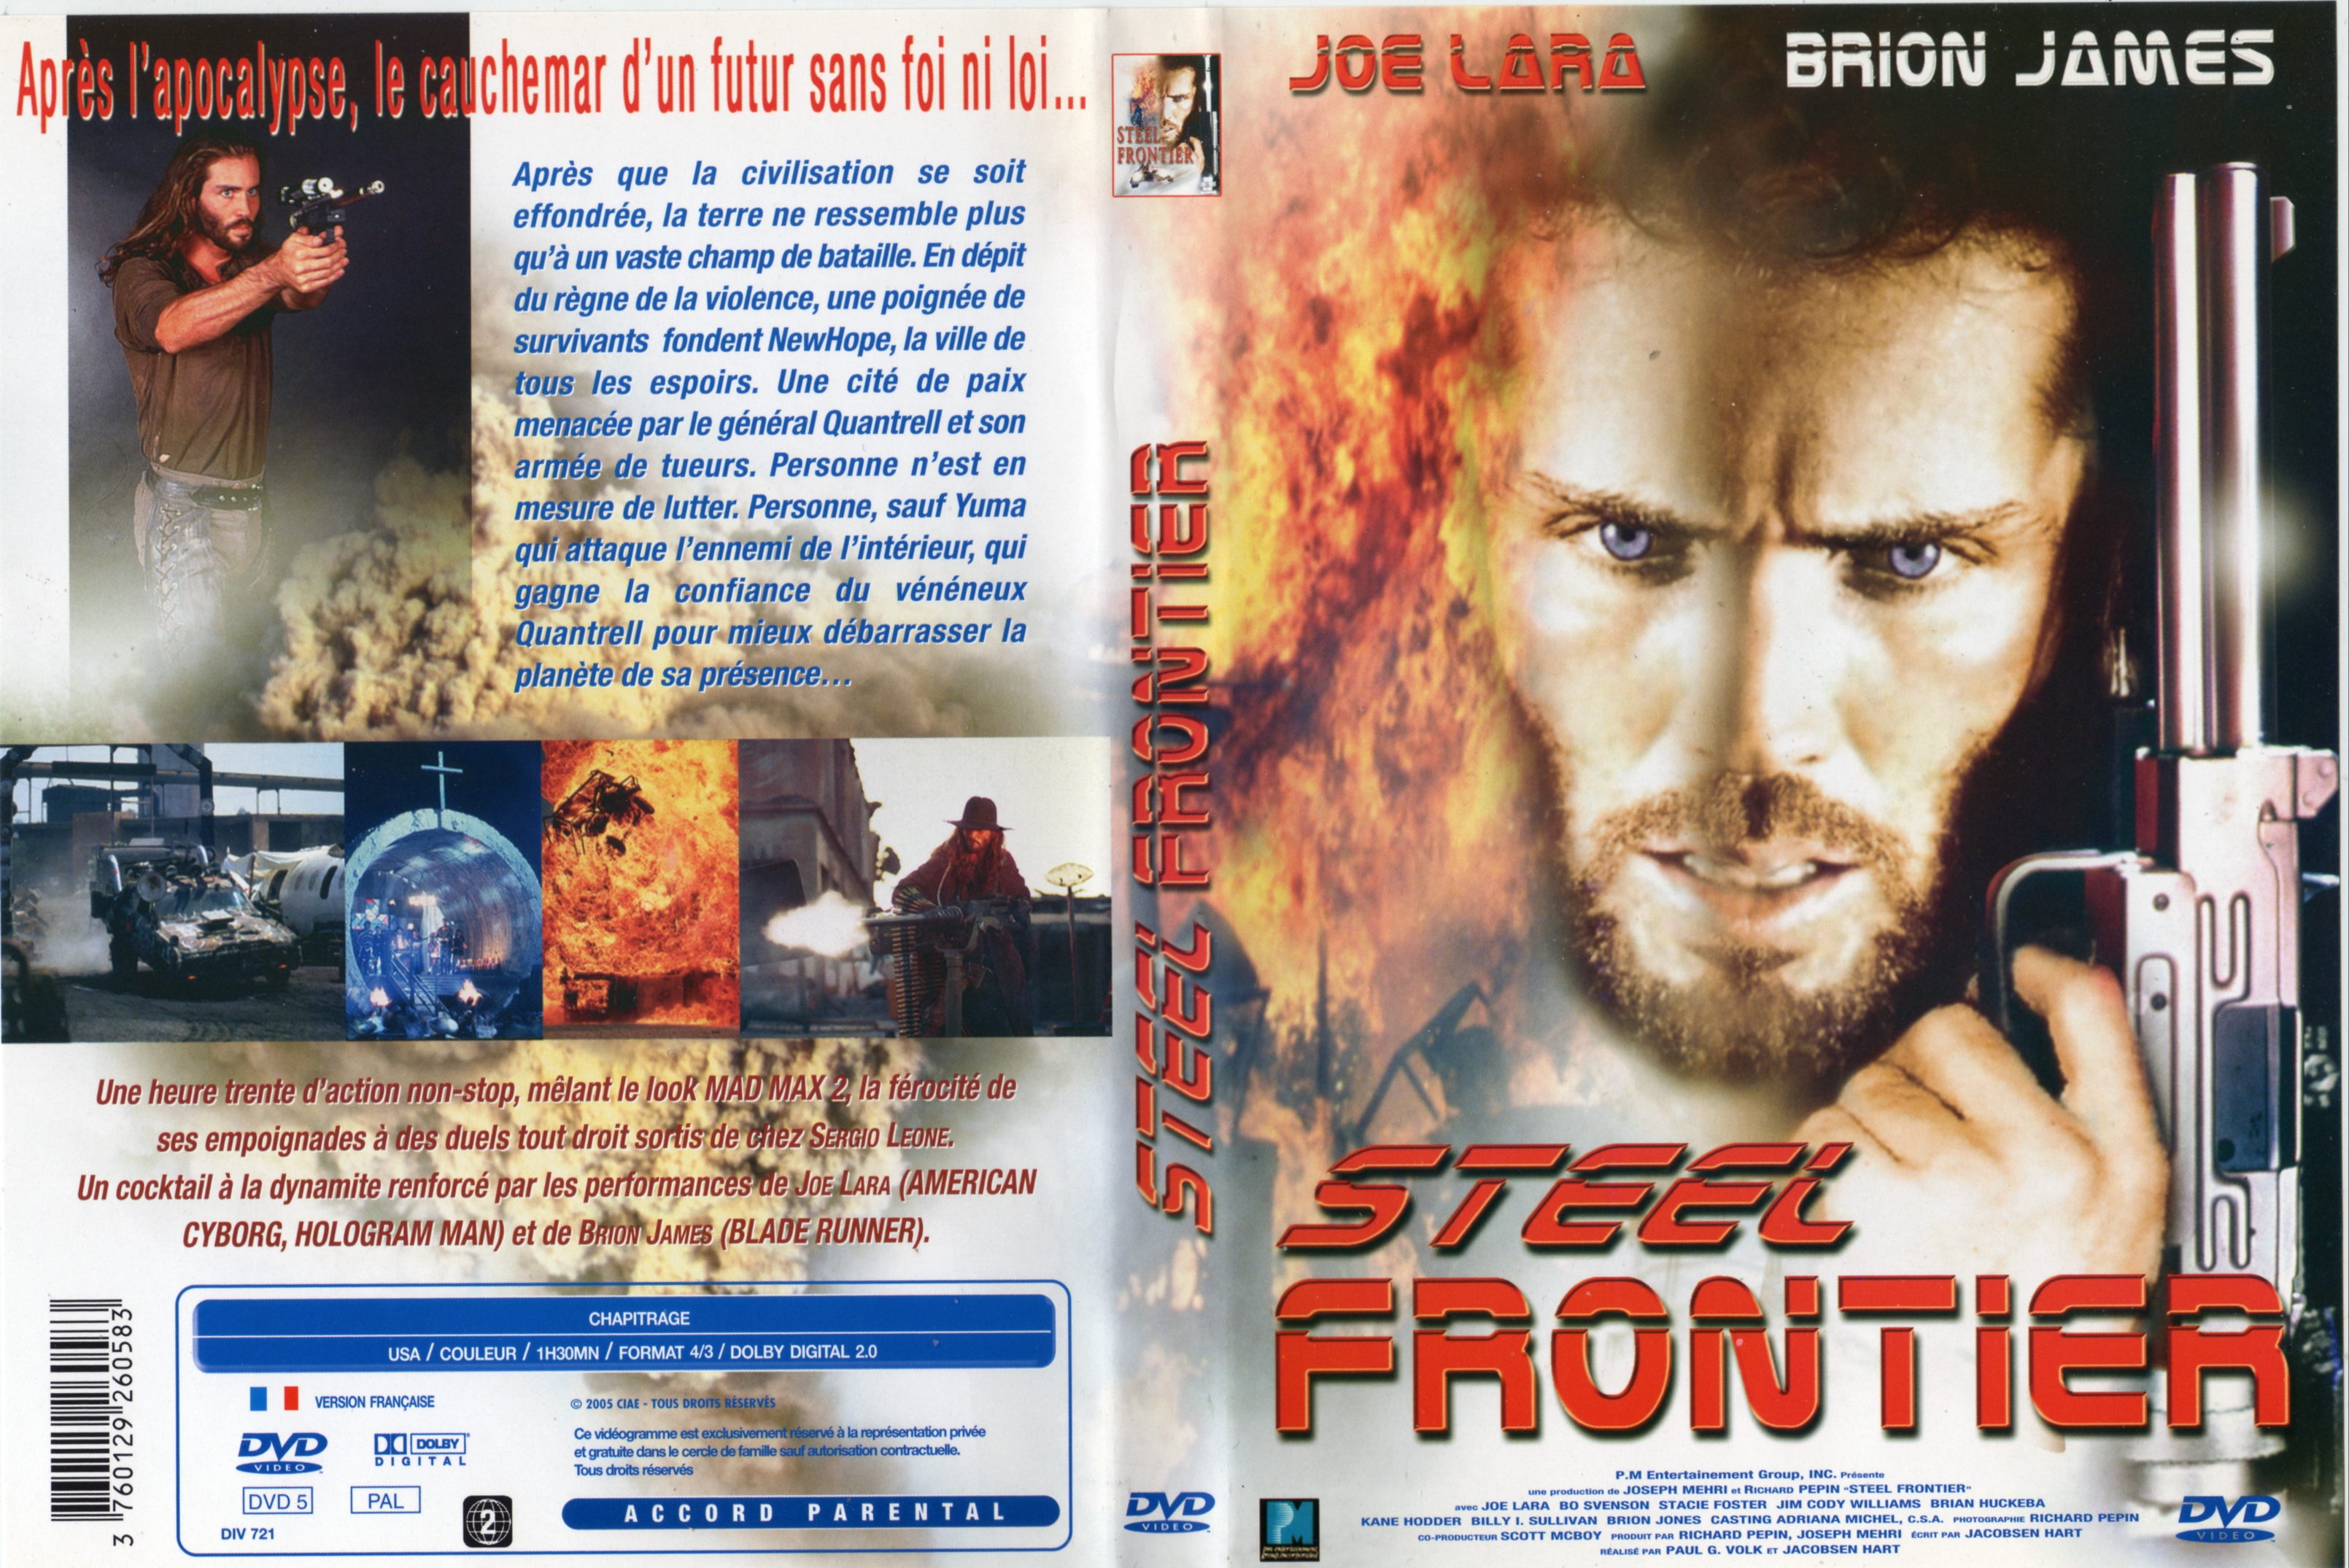 Jaquette DVD Steel frontier